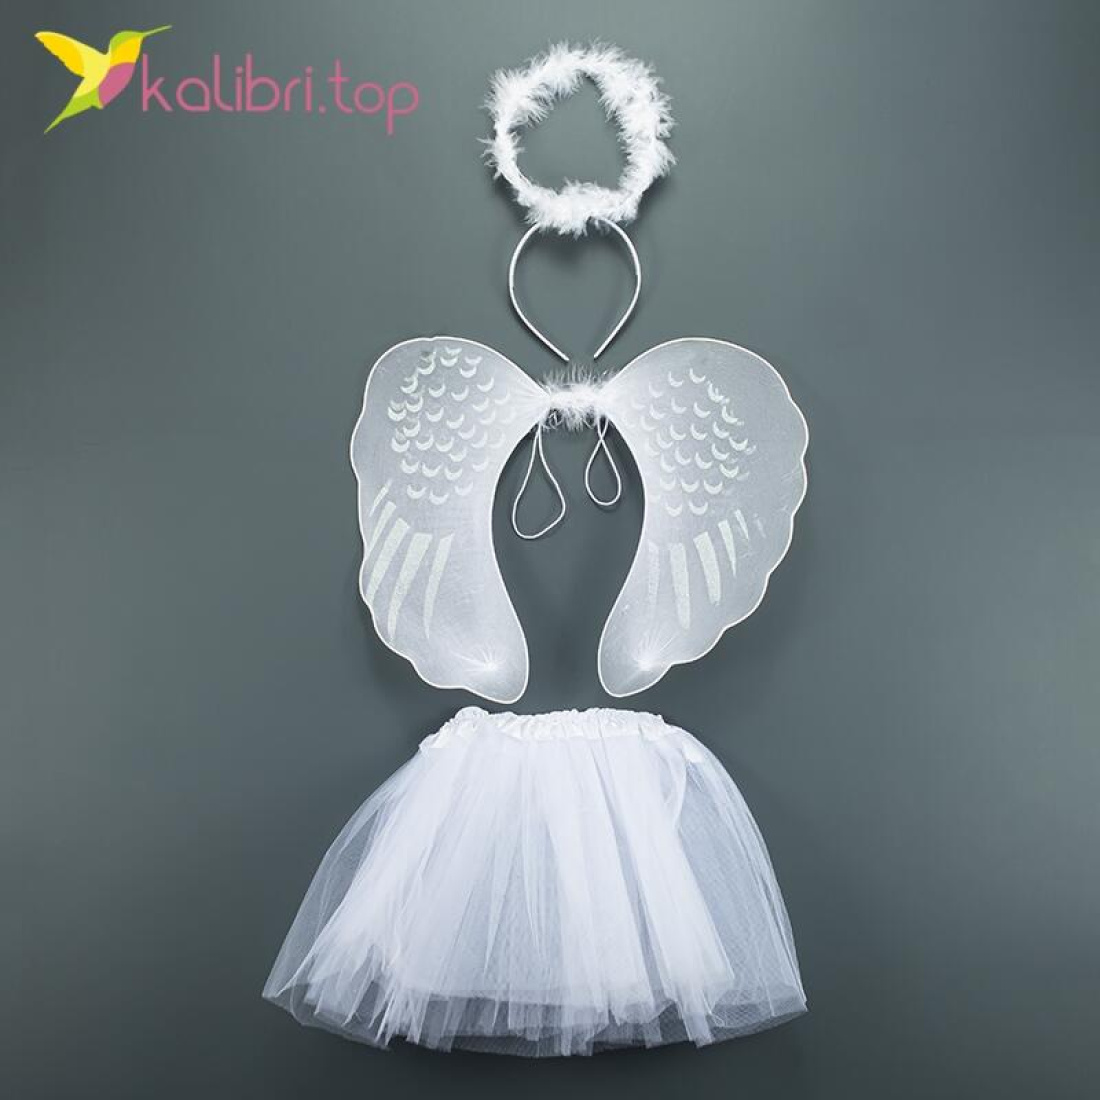 Набор ангела карнавальный с юбкой белый оптом фото 01